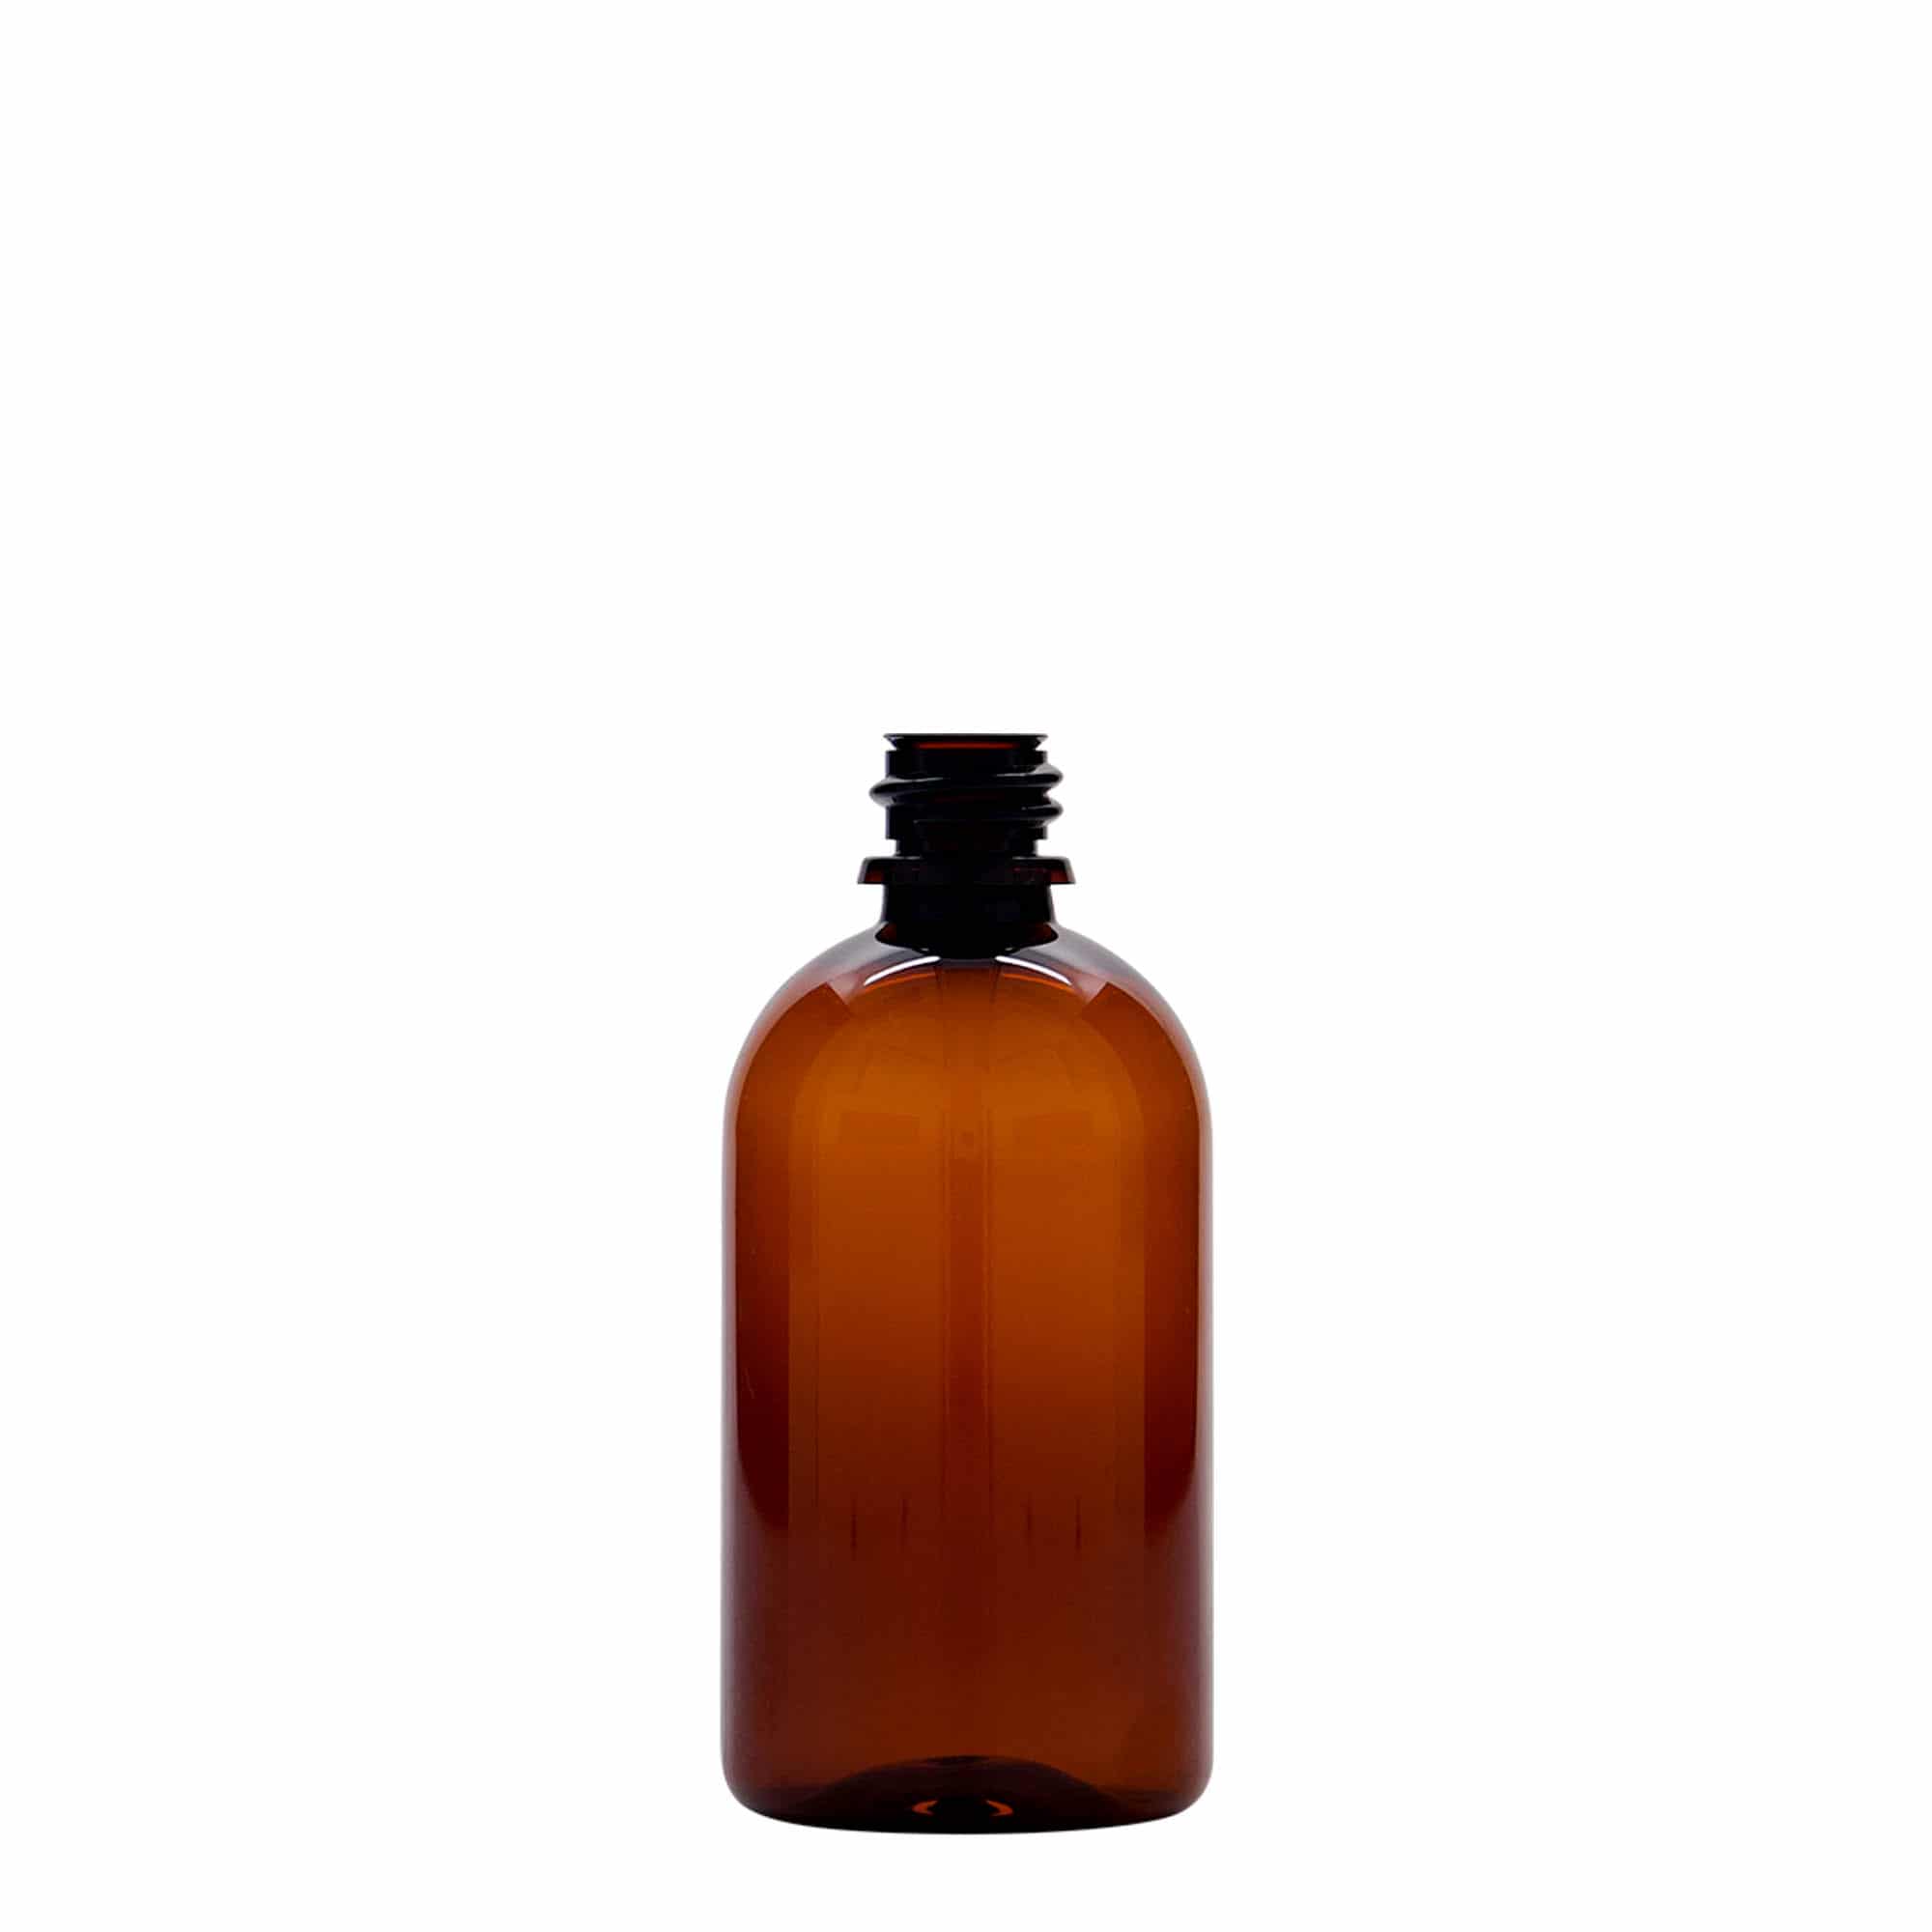 100 ml butelka farmaceutyczna PET 'Easy Living', kolor brązowy, tworzywo sztuczne, zamknięcie: DIN 18